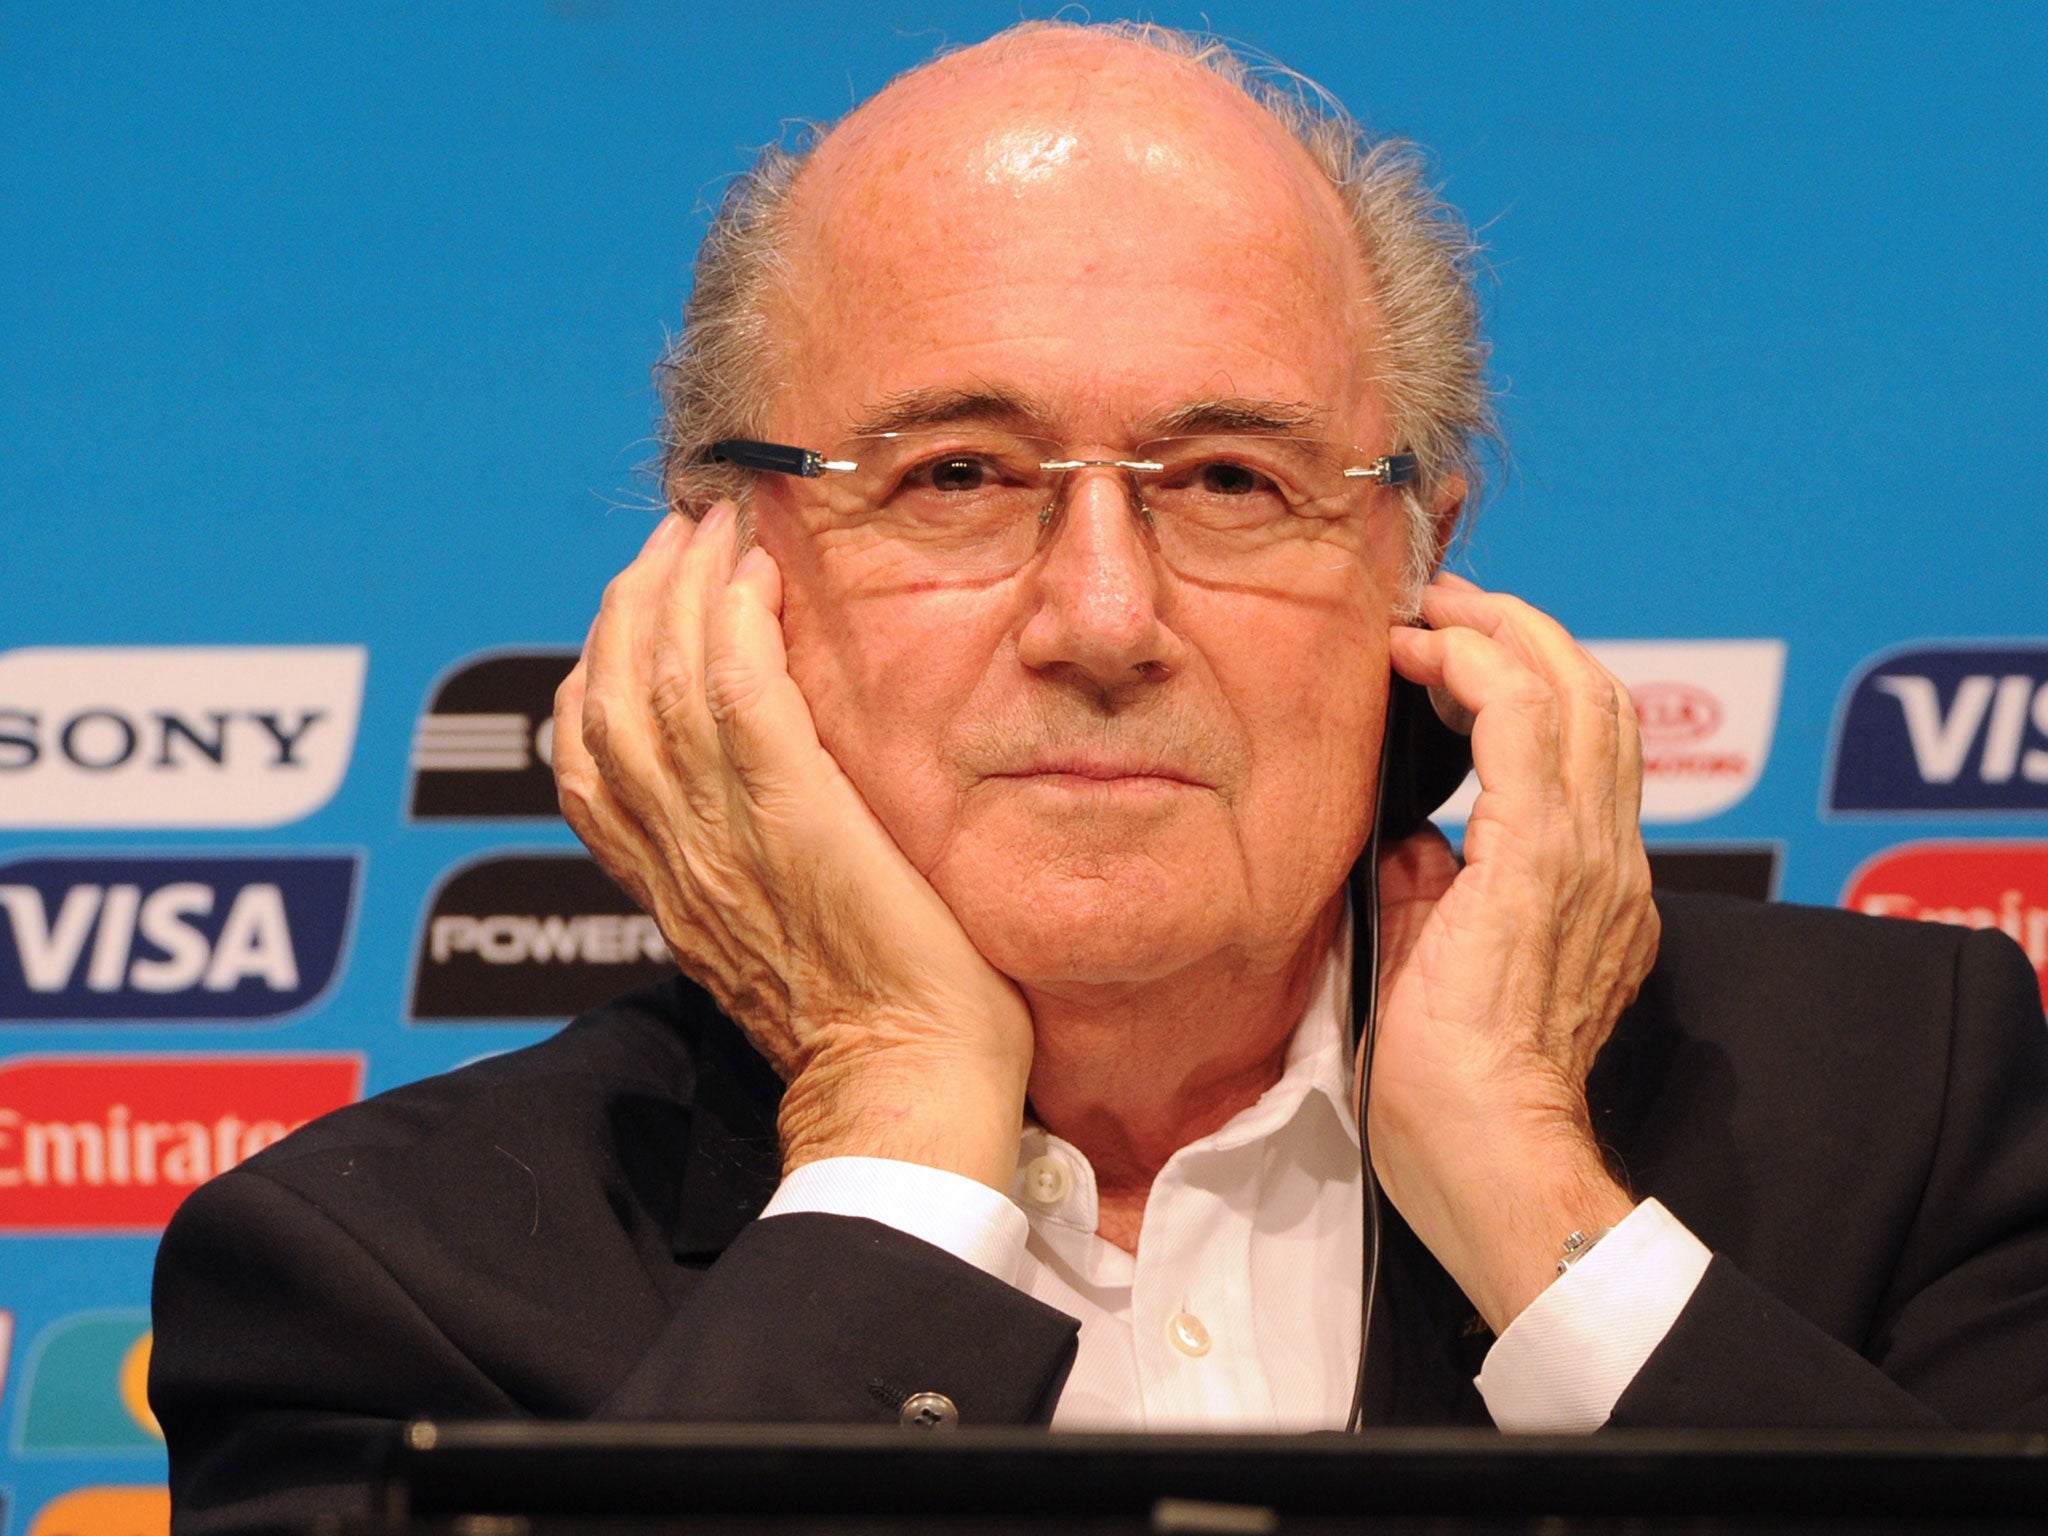 The Fifa president Sepp Blatter